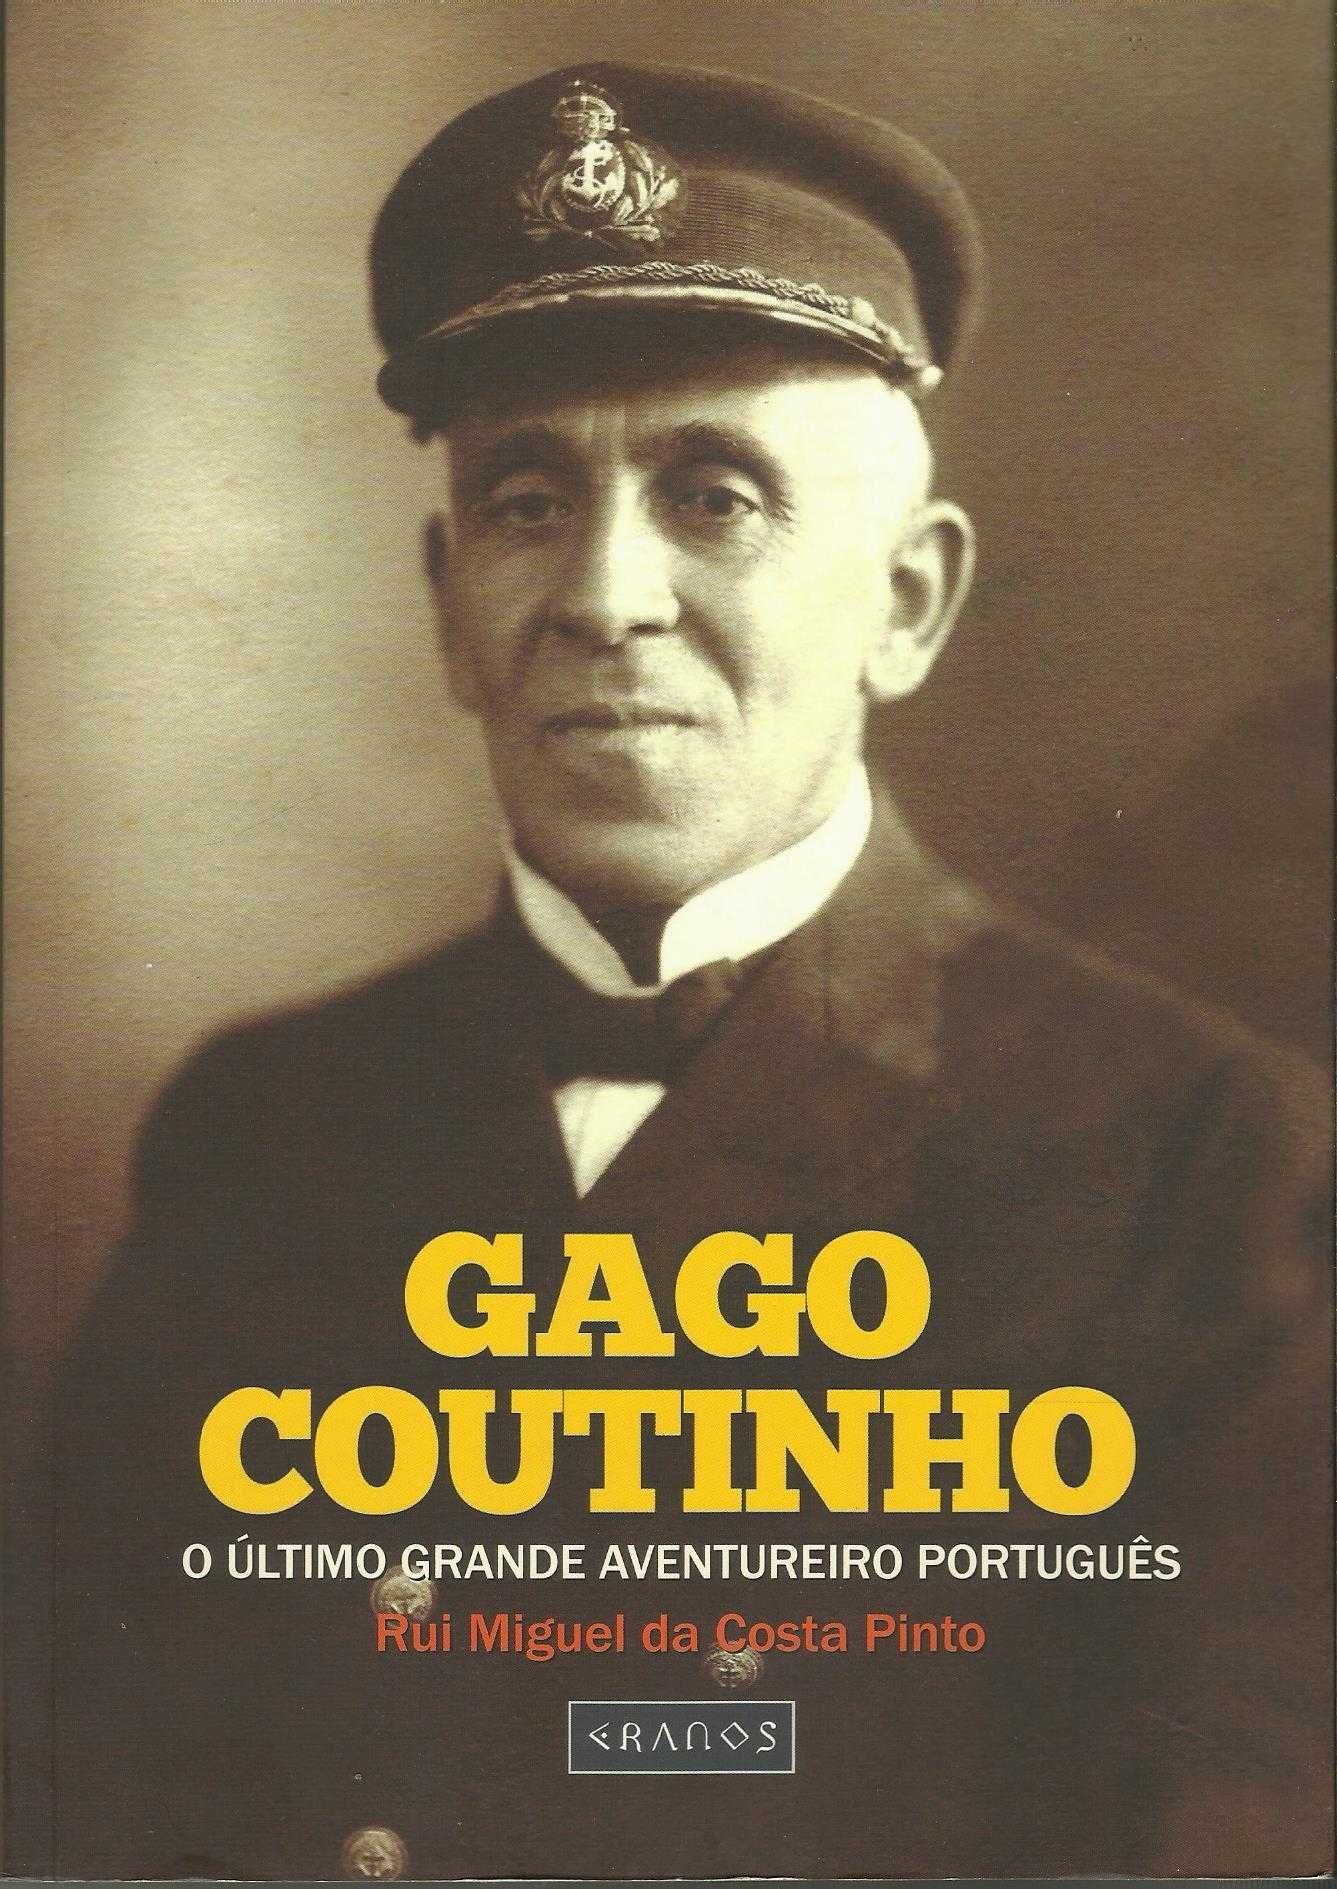 Gago Coutinho: O último grande aventureiro Português